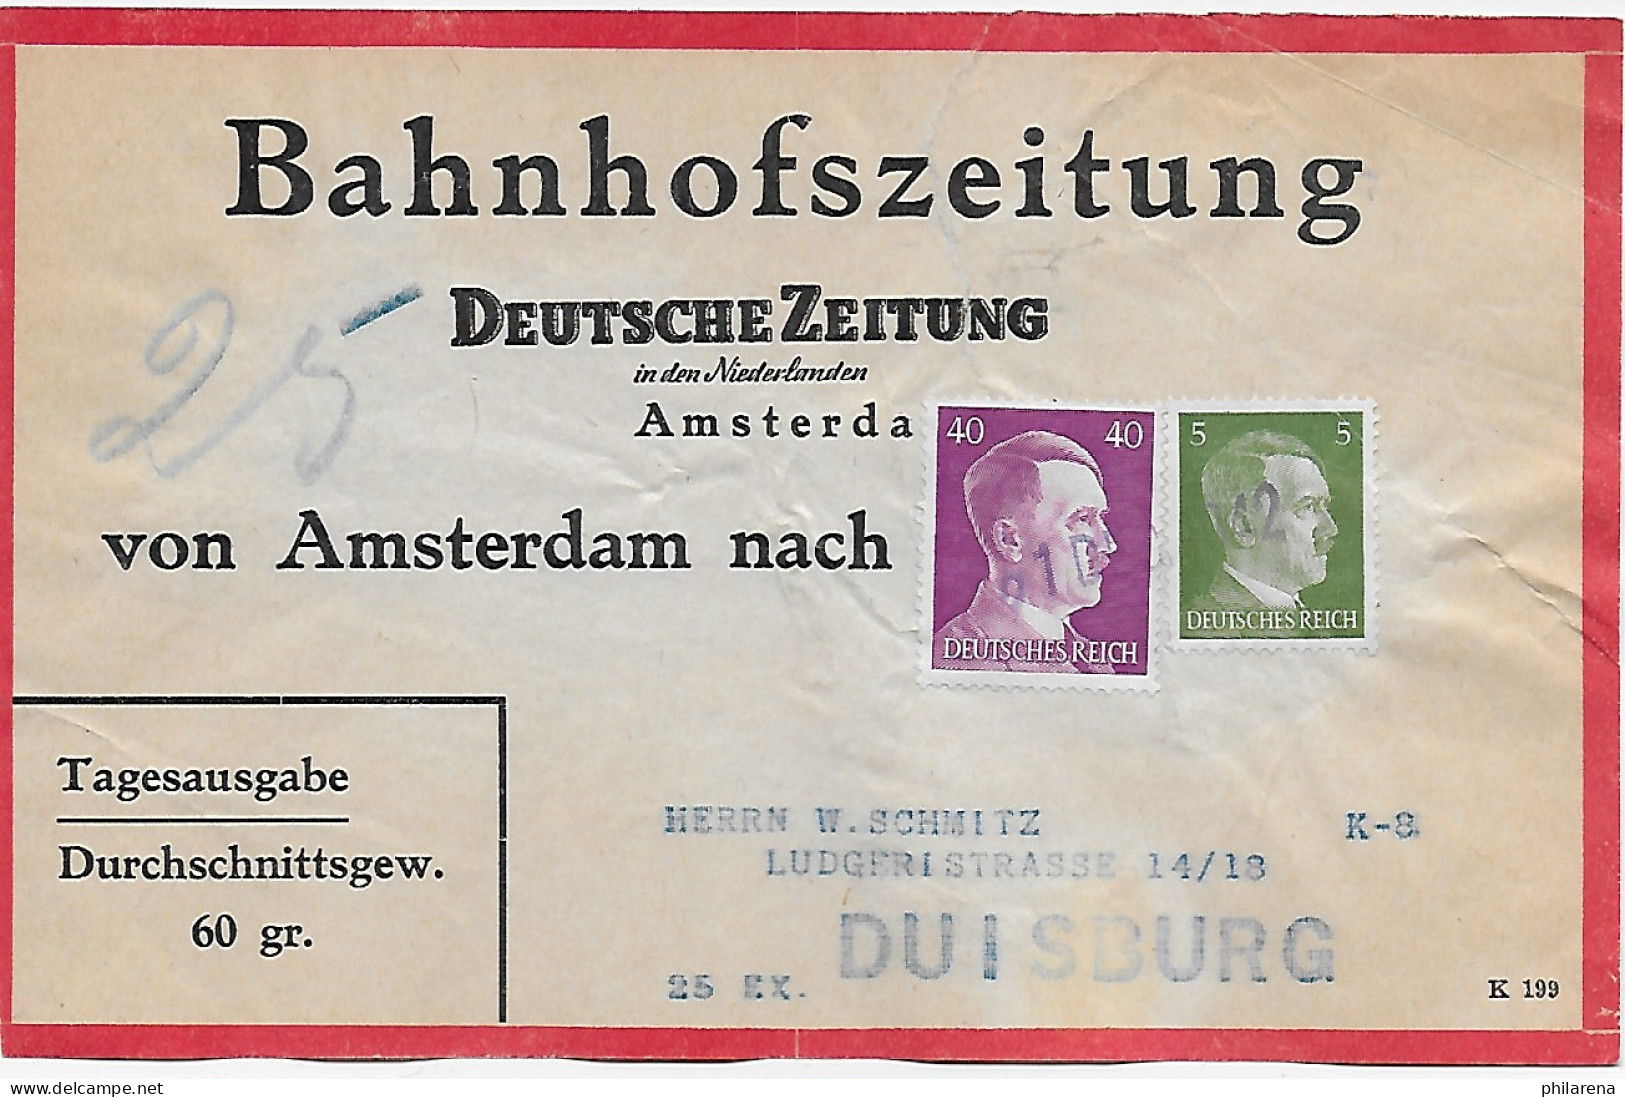 Bahnhofszeitung: 25 Stück Deutsche Zeitung, Niederlande 1942, Feldpost Amsterdam - Feldpost 2. Weltkrieg